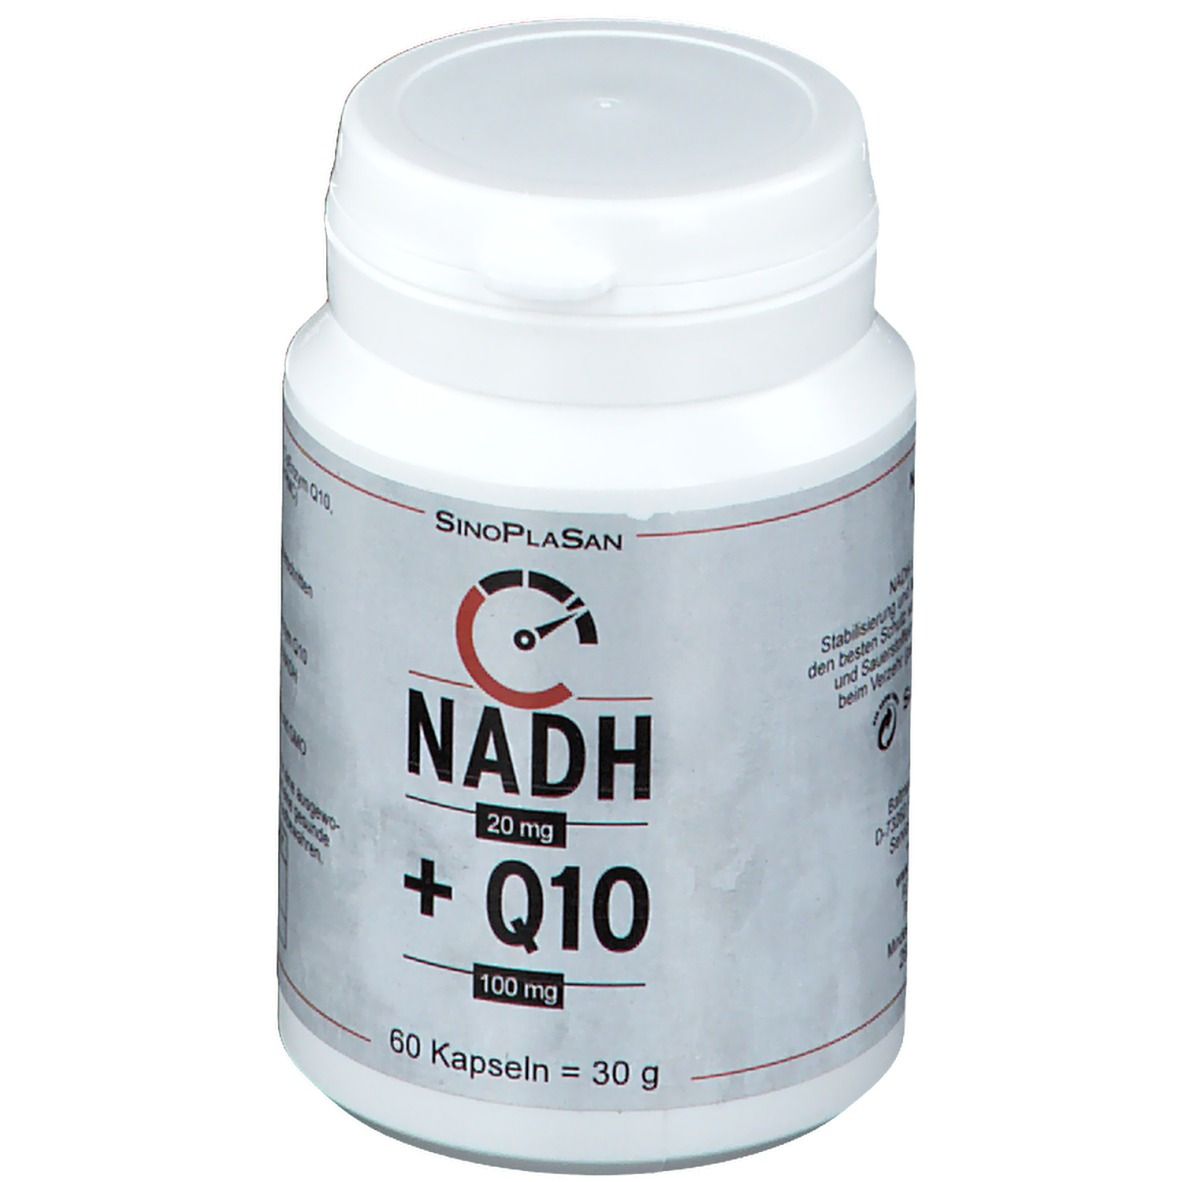 SinoPlaSan NADH 20 mg + Q10 100 mg